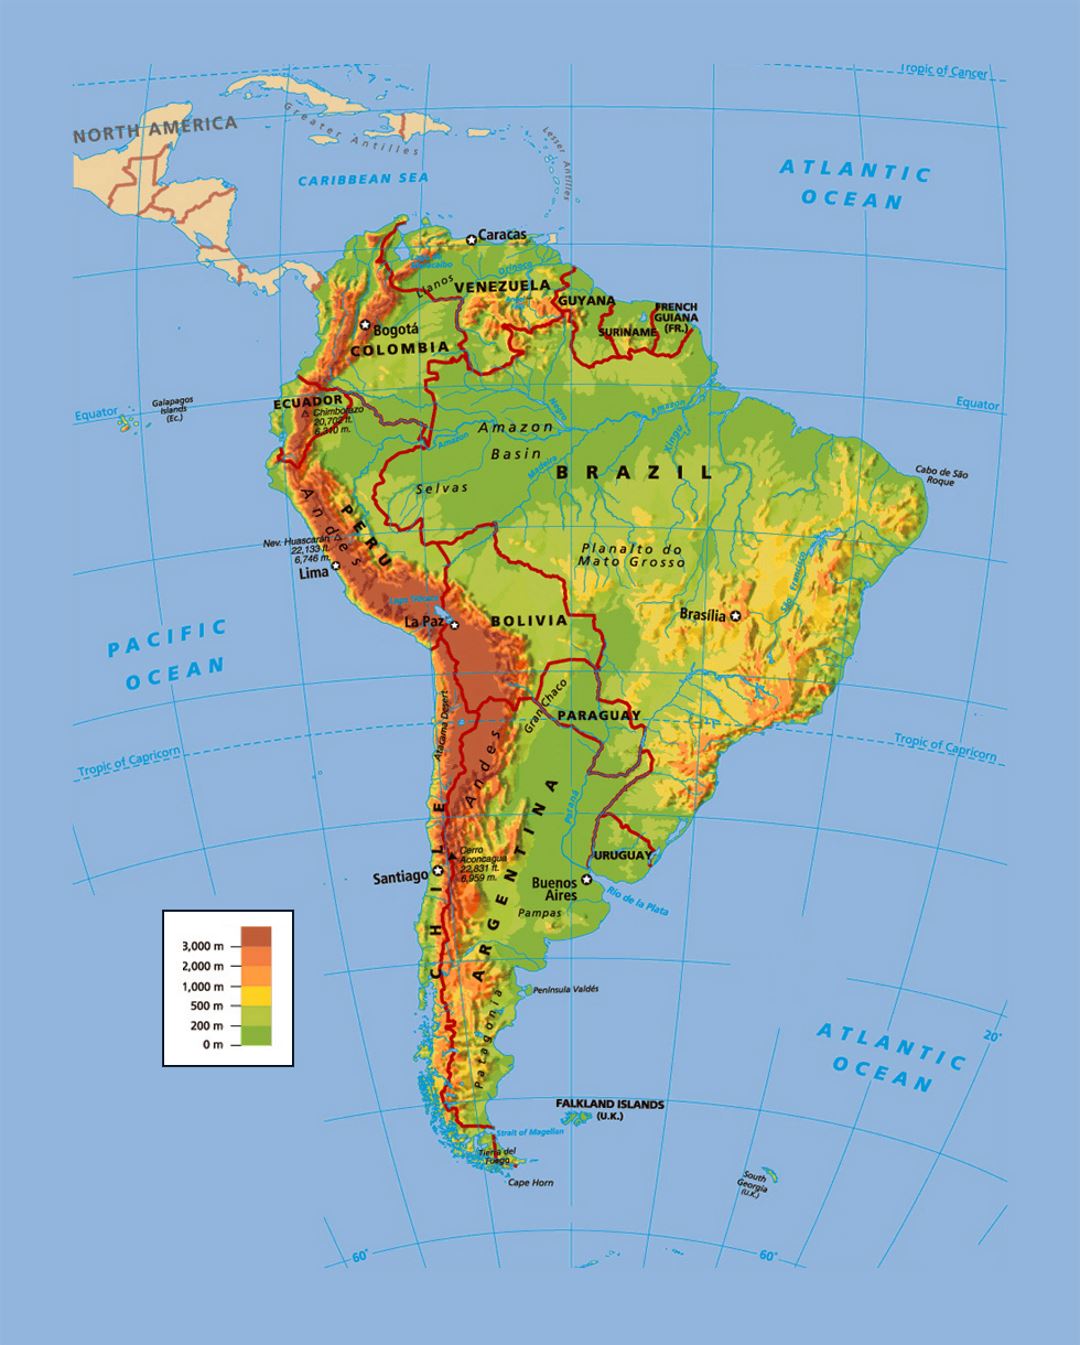 Mapa político y físico de América del Sur